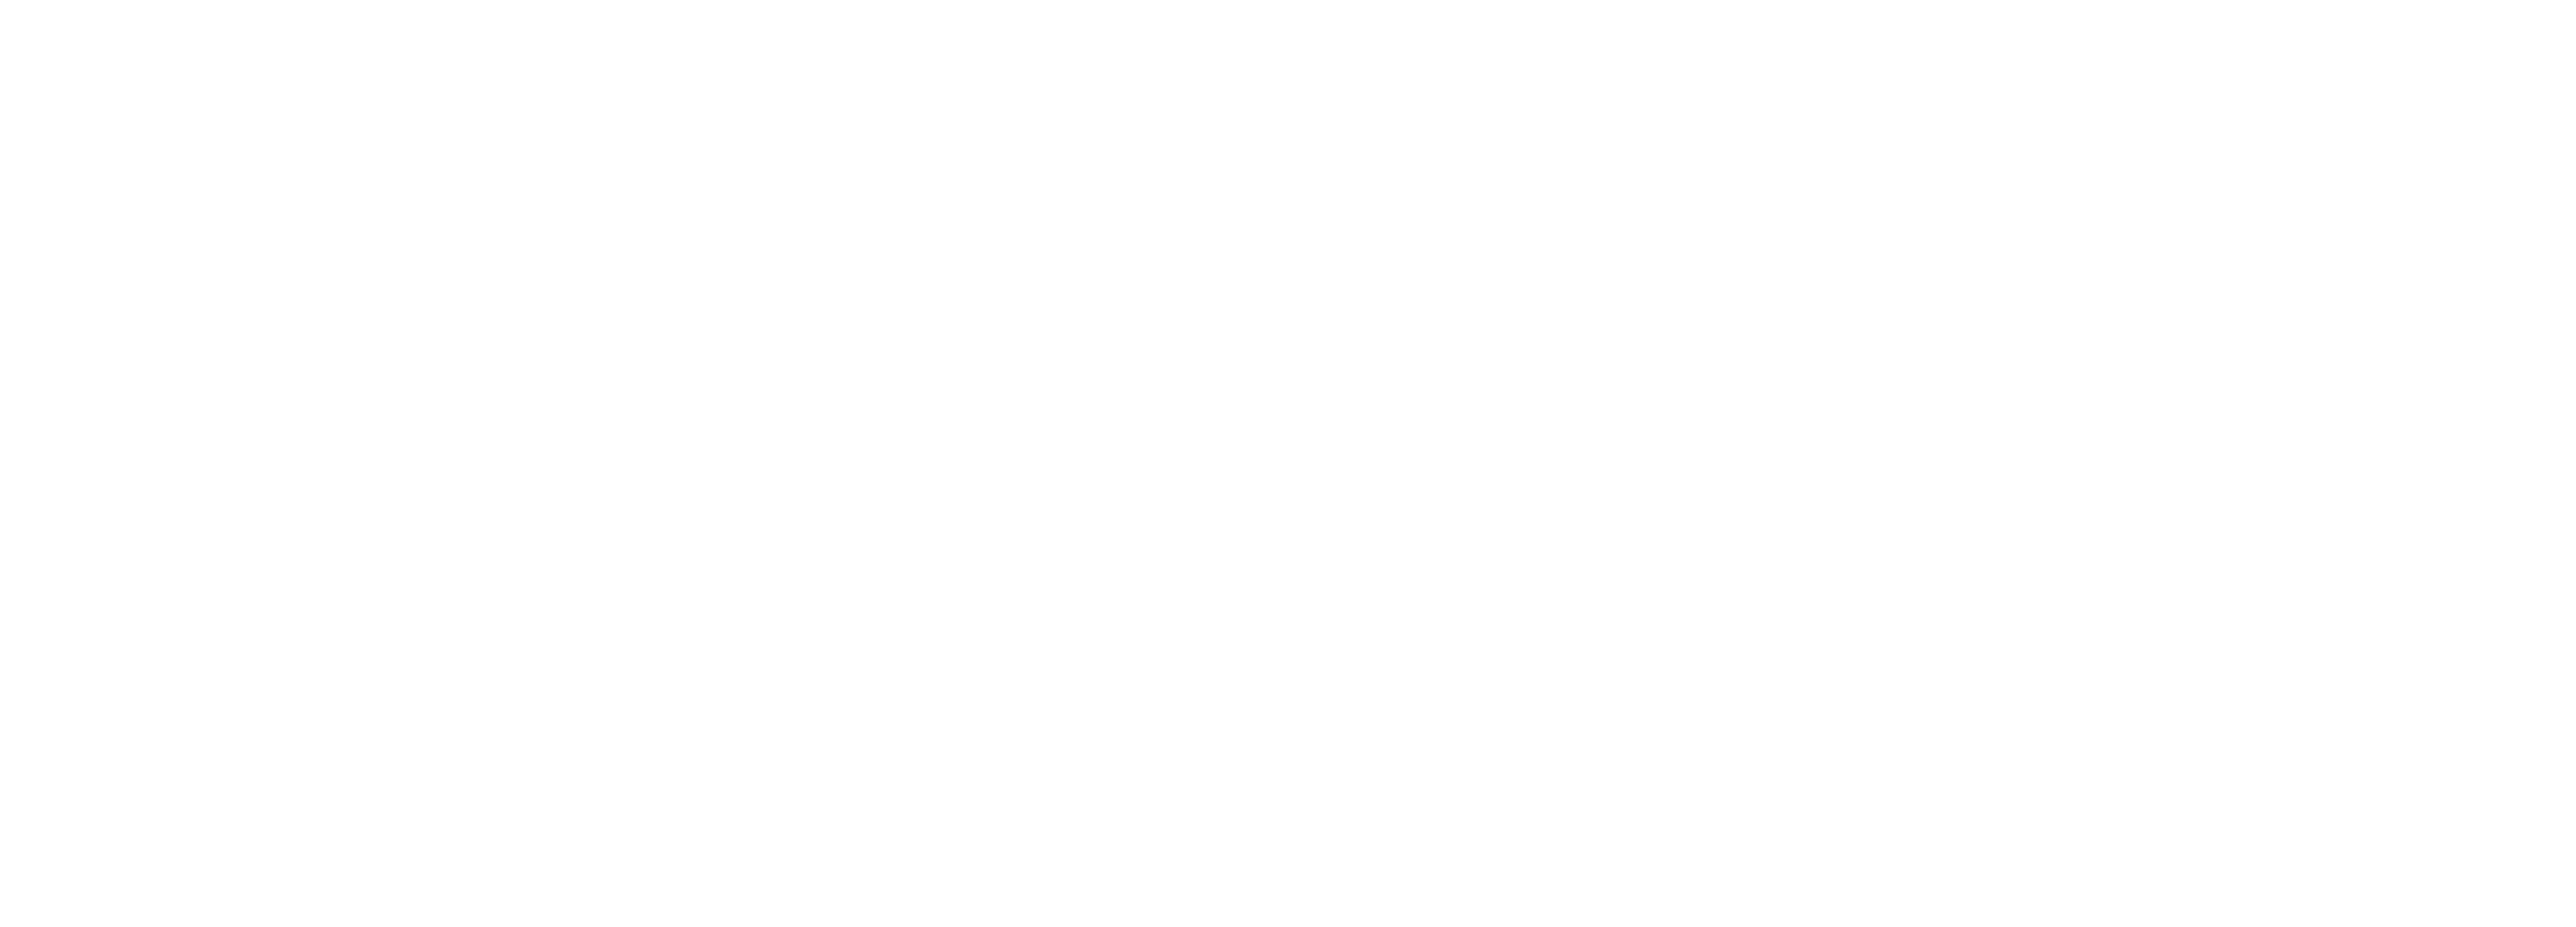 Bennett Furniture Depot